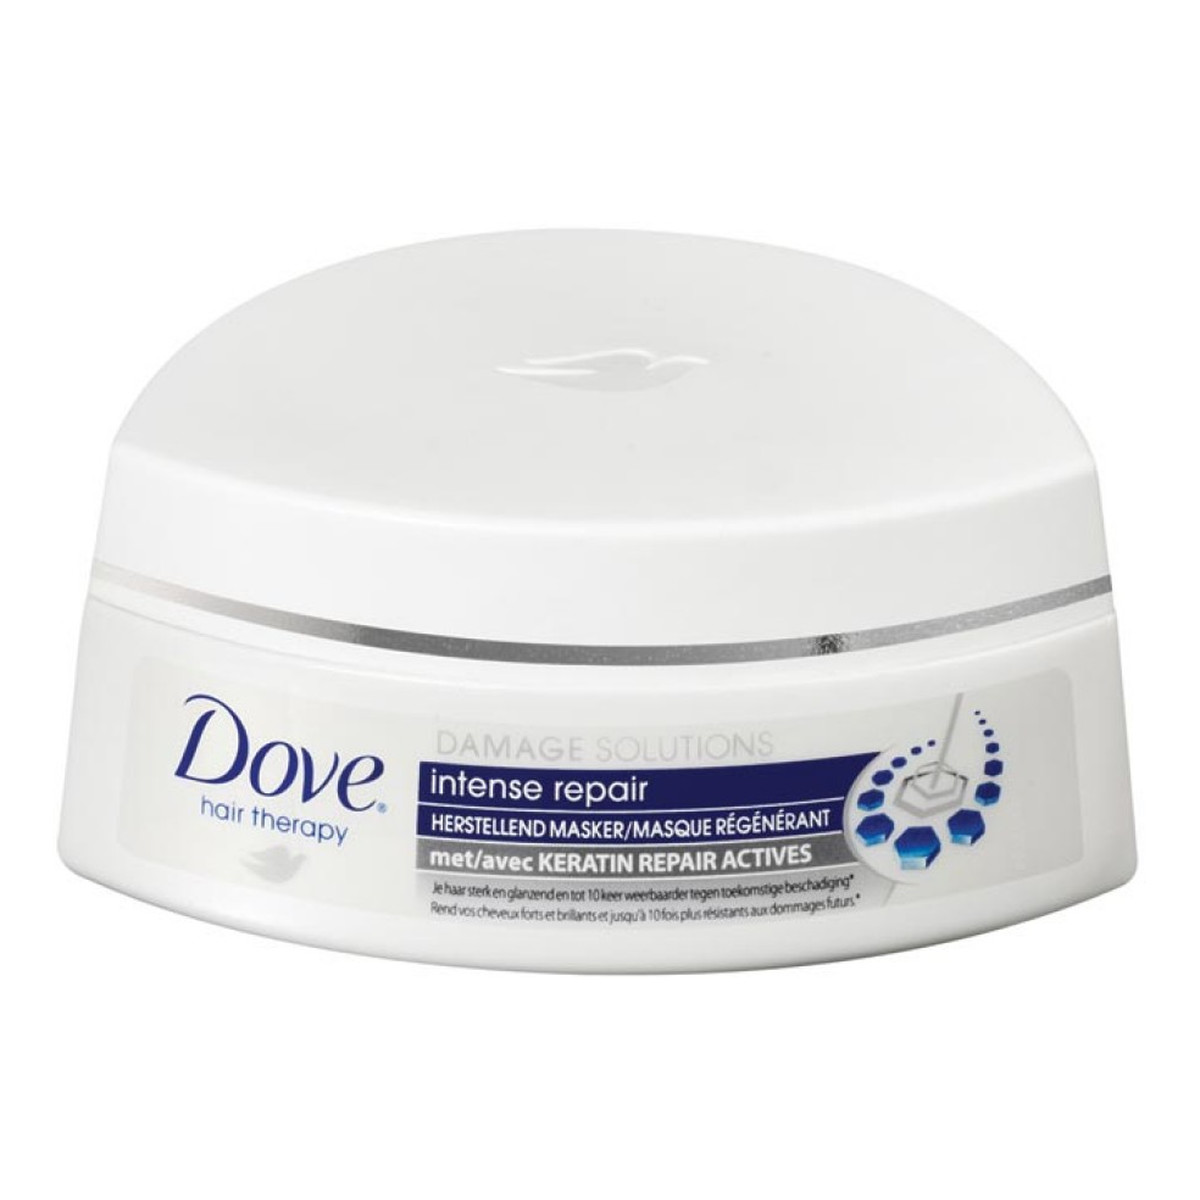 Dove Damage Solutions Maska Regenerująca Do Włosów 200ml